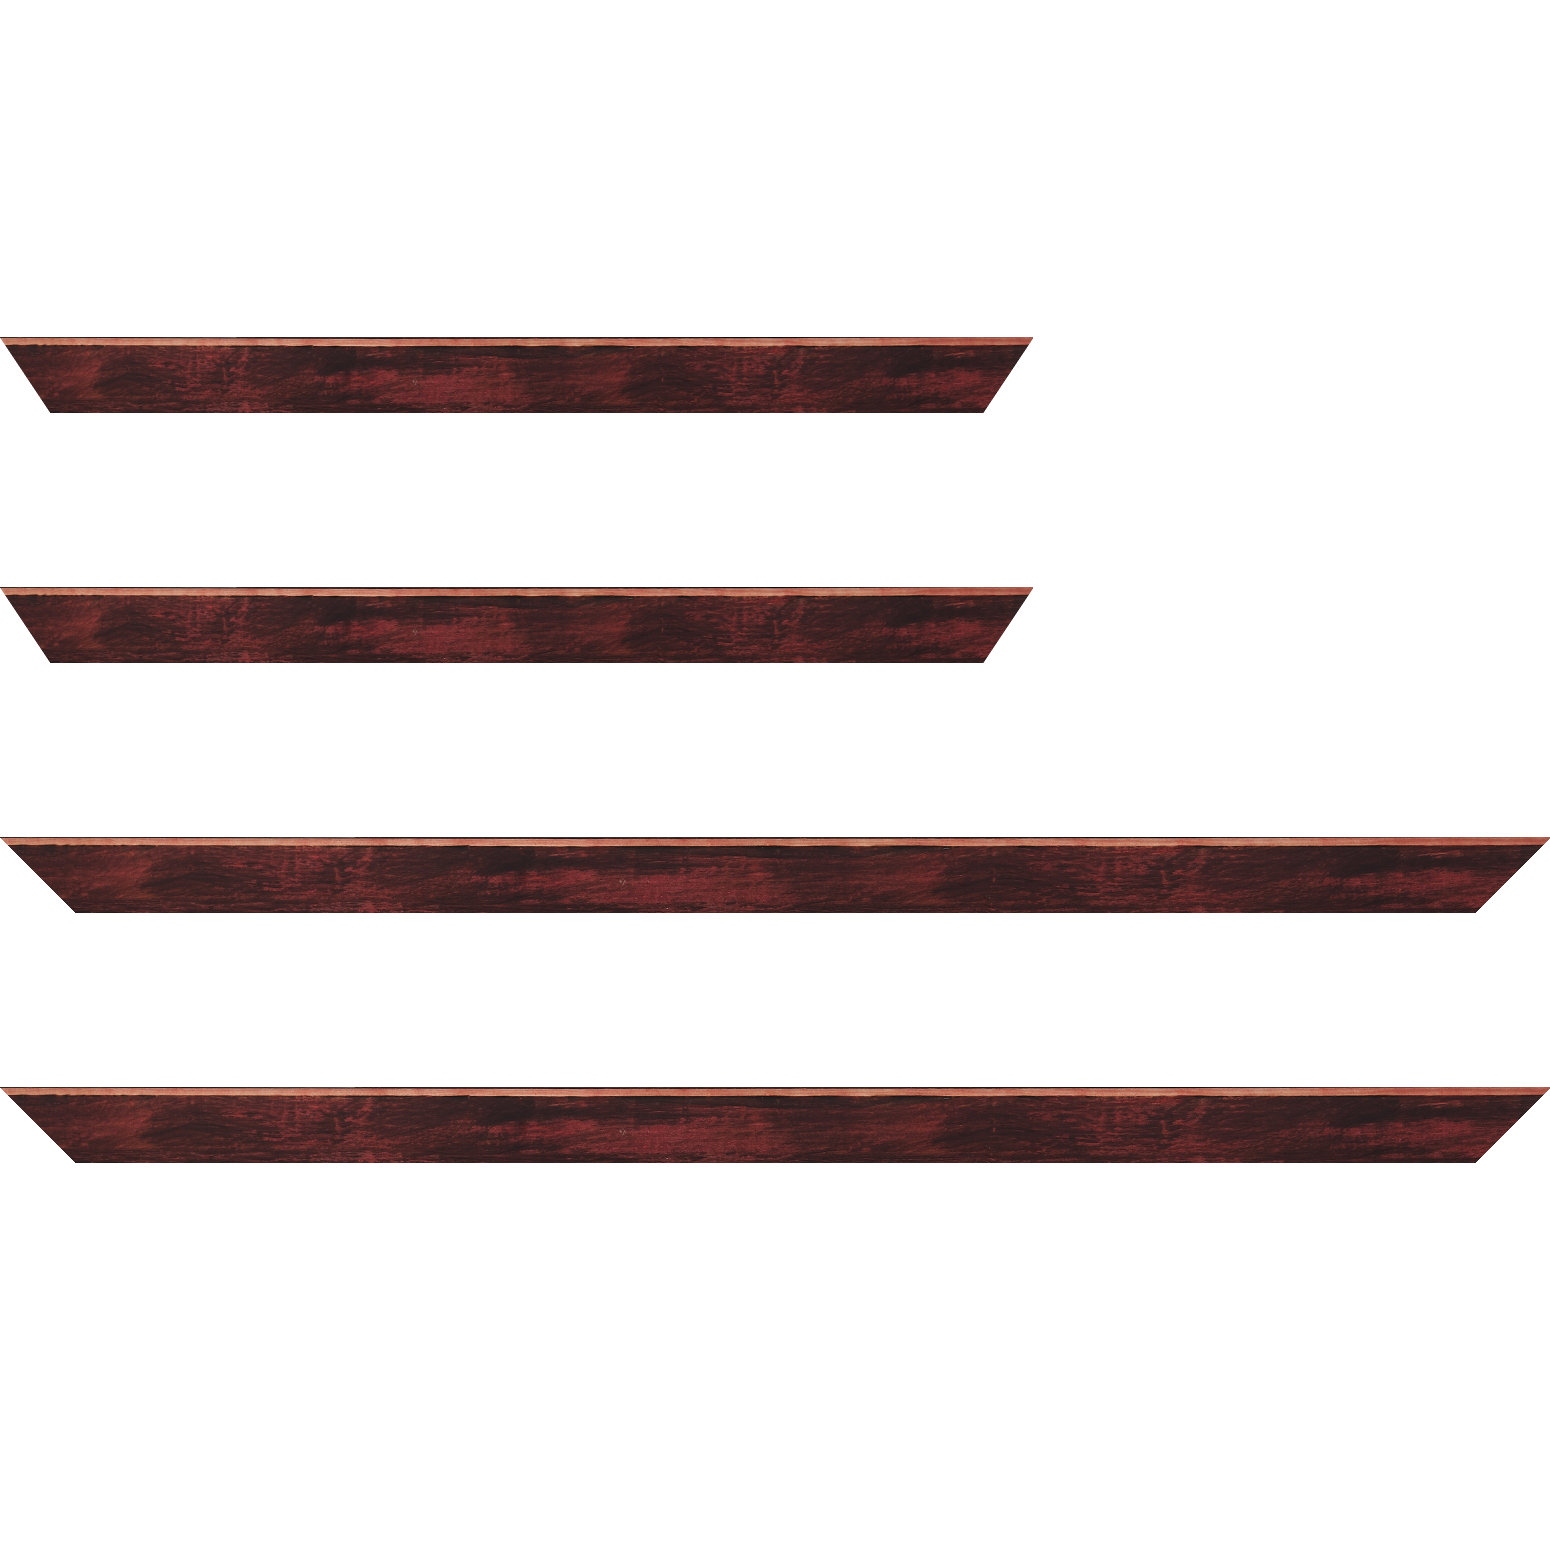 Baguette bois profil arrondi en pente plongeant largeur 2.4cm couleur bordeaux effet ressuyé, angle du cadre extérieur filet naturel - 92x60